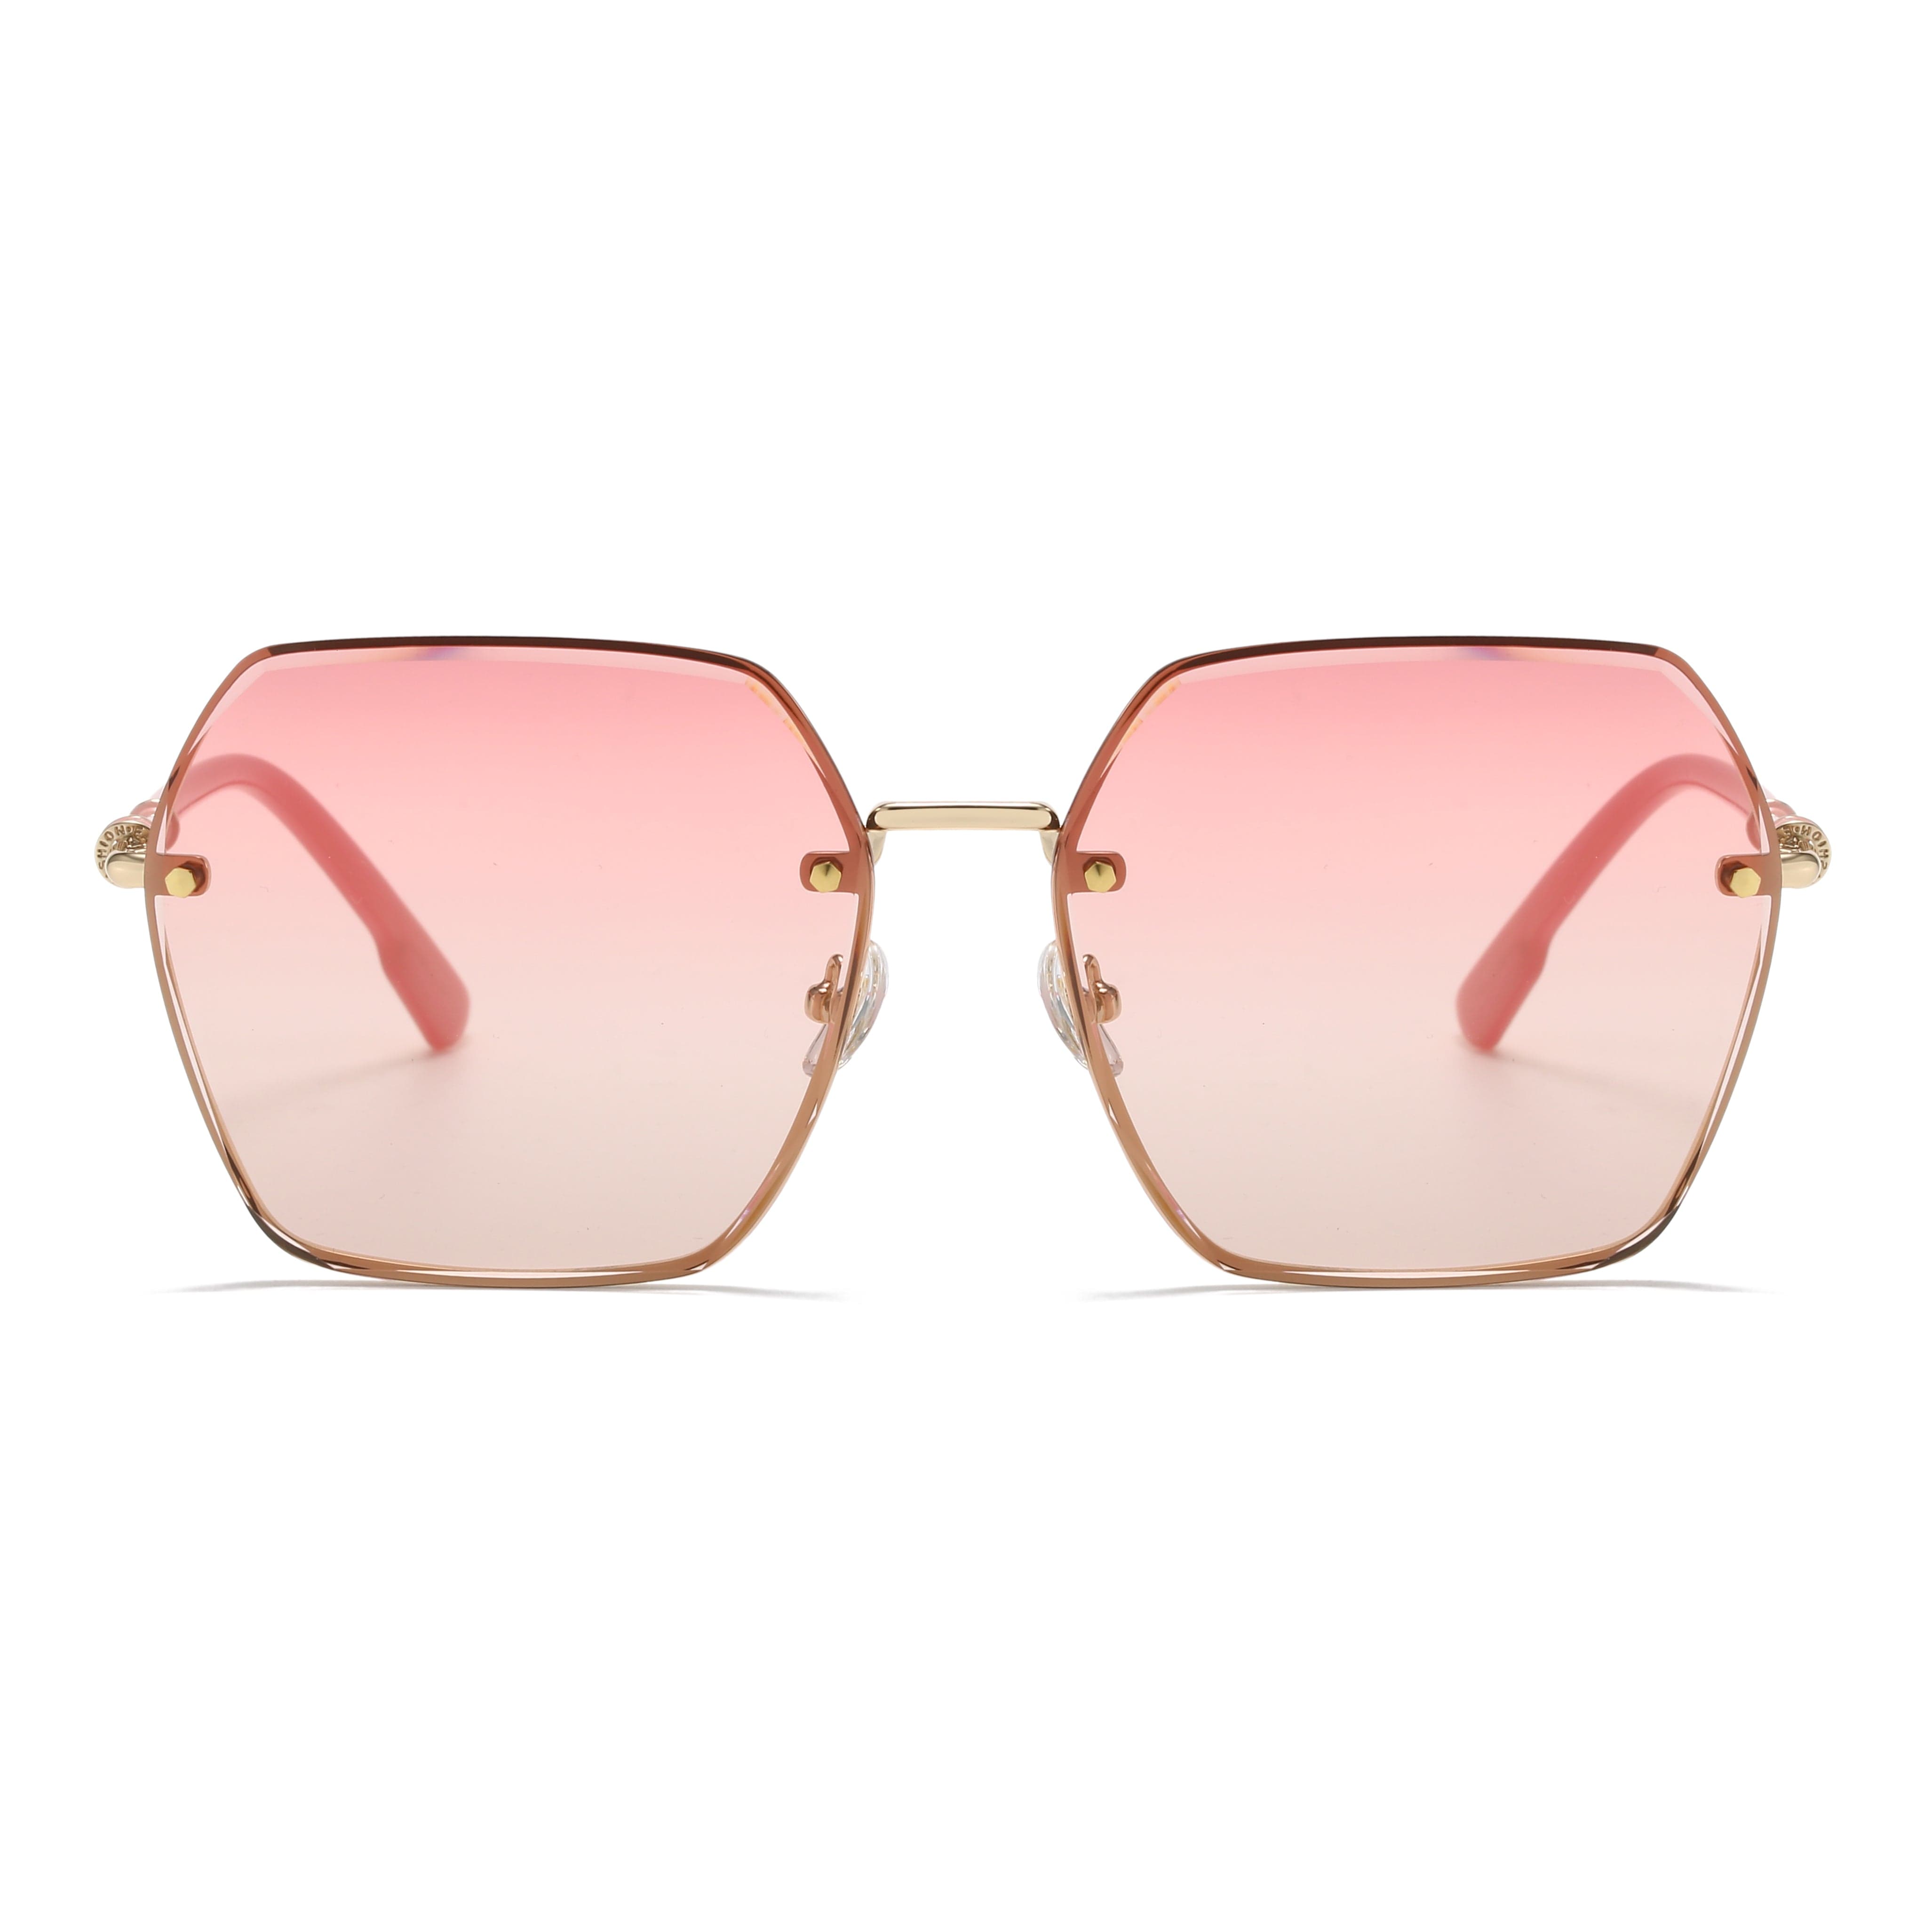 GIUSTIZIERI VECCHI Sunglasses Medium / Light Pink DeluxeDiva Duo